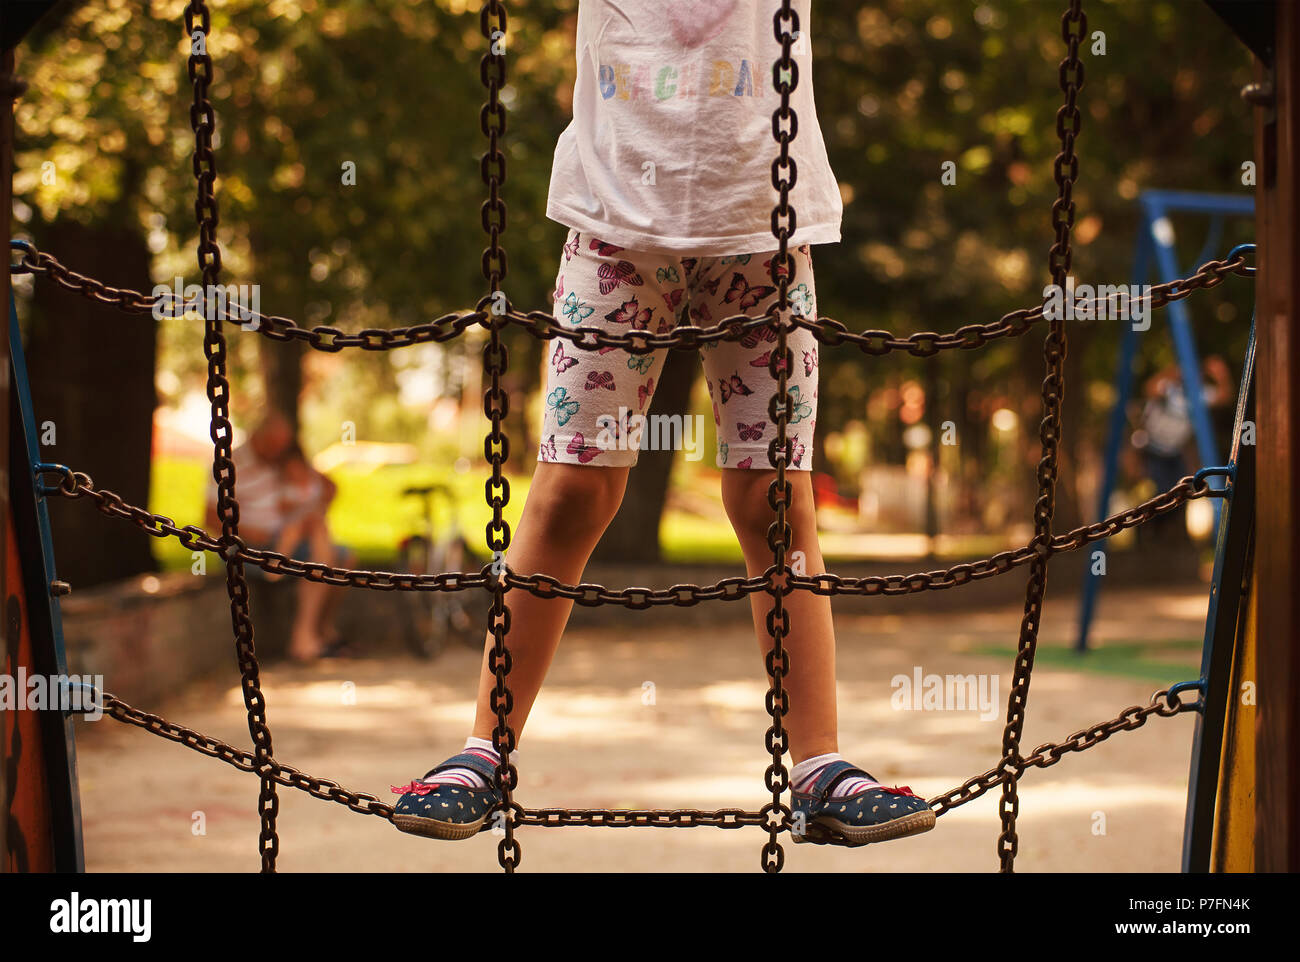 Bambina sul parco giochi nel parco, arrampicate sulle catene, le persone più anziane con un bambino piccolo in sfondo sfocato. Foto Stock